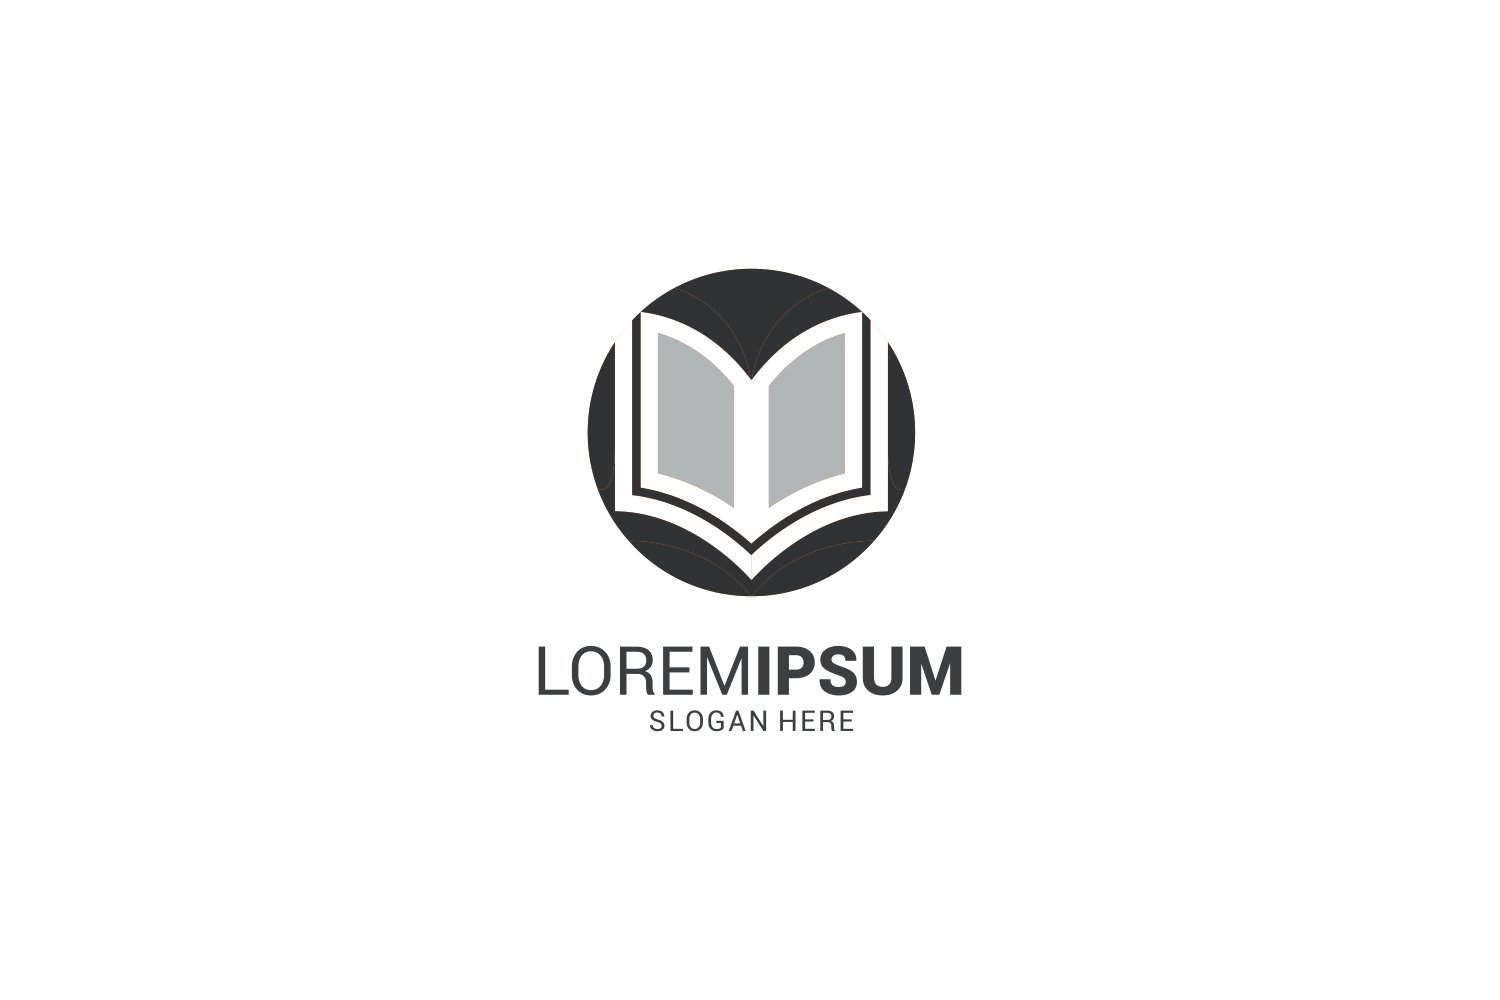 Grey open book logo with a dark border.